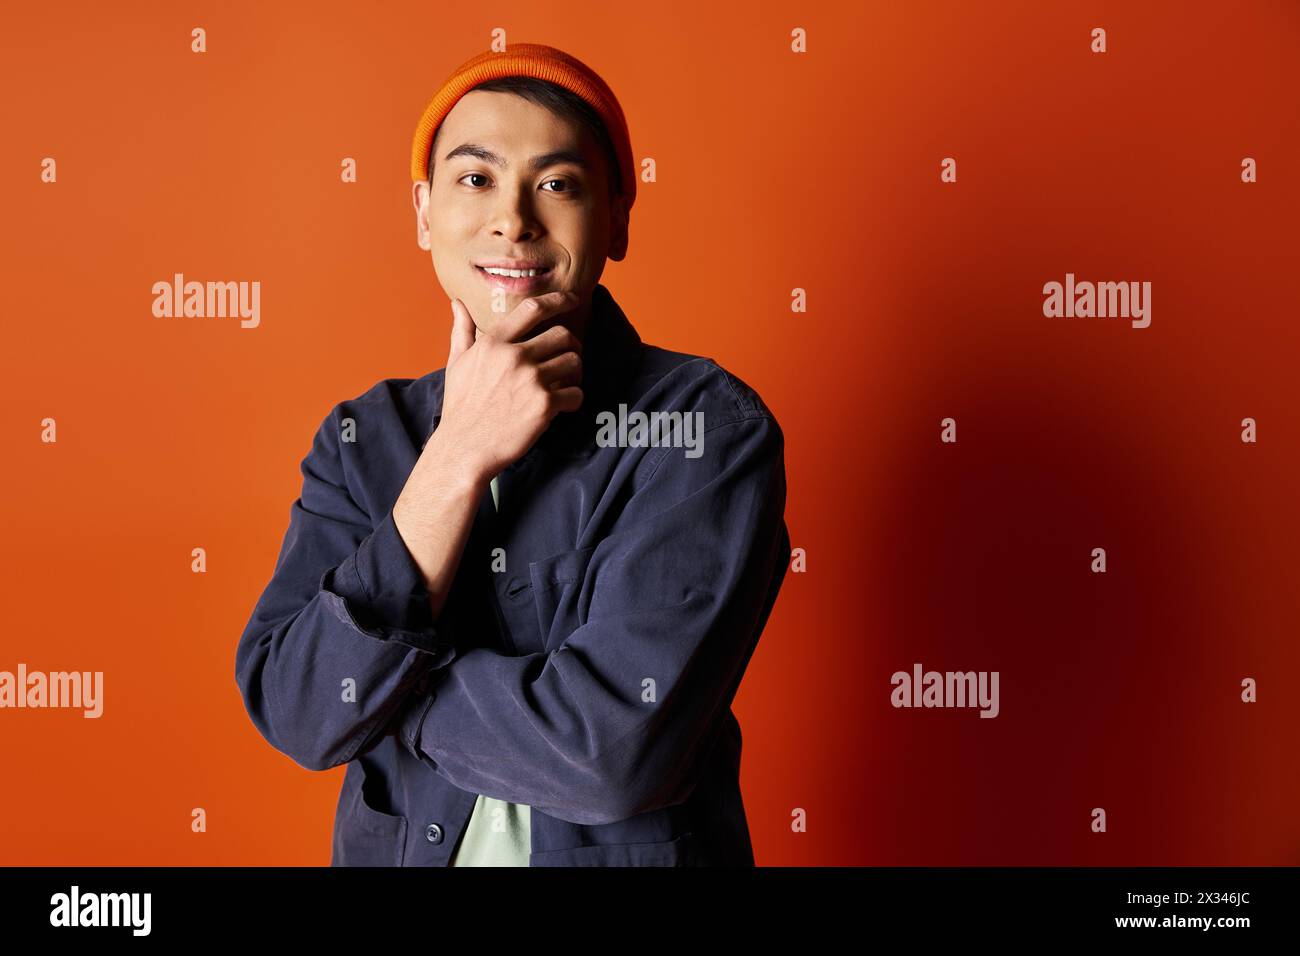 Un bel homme asiatique vêtu d'une tenue élégante se tient confiant devant un mur orange. Banque D'Images